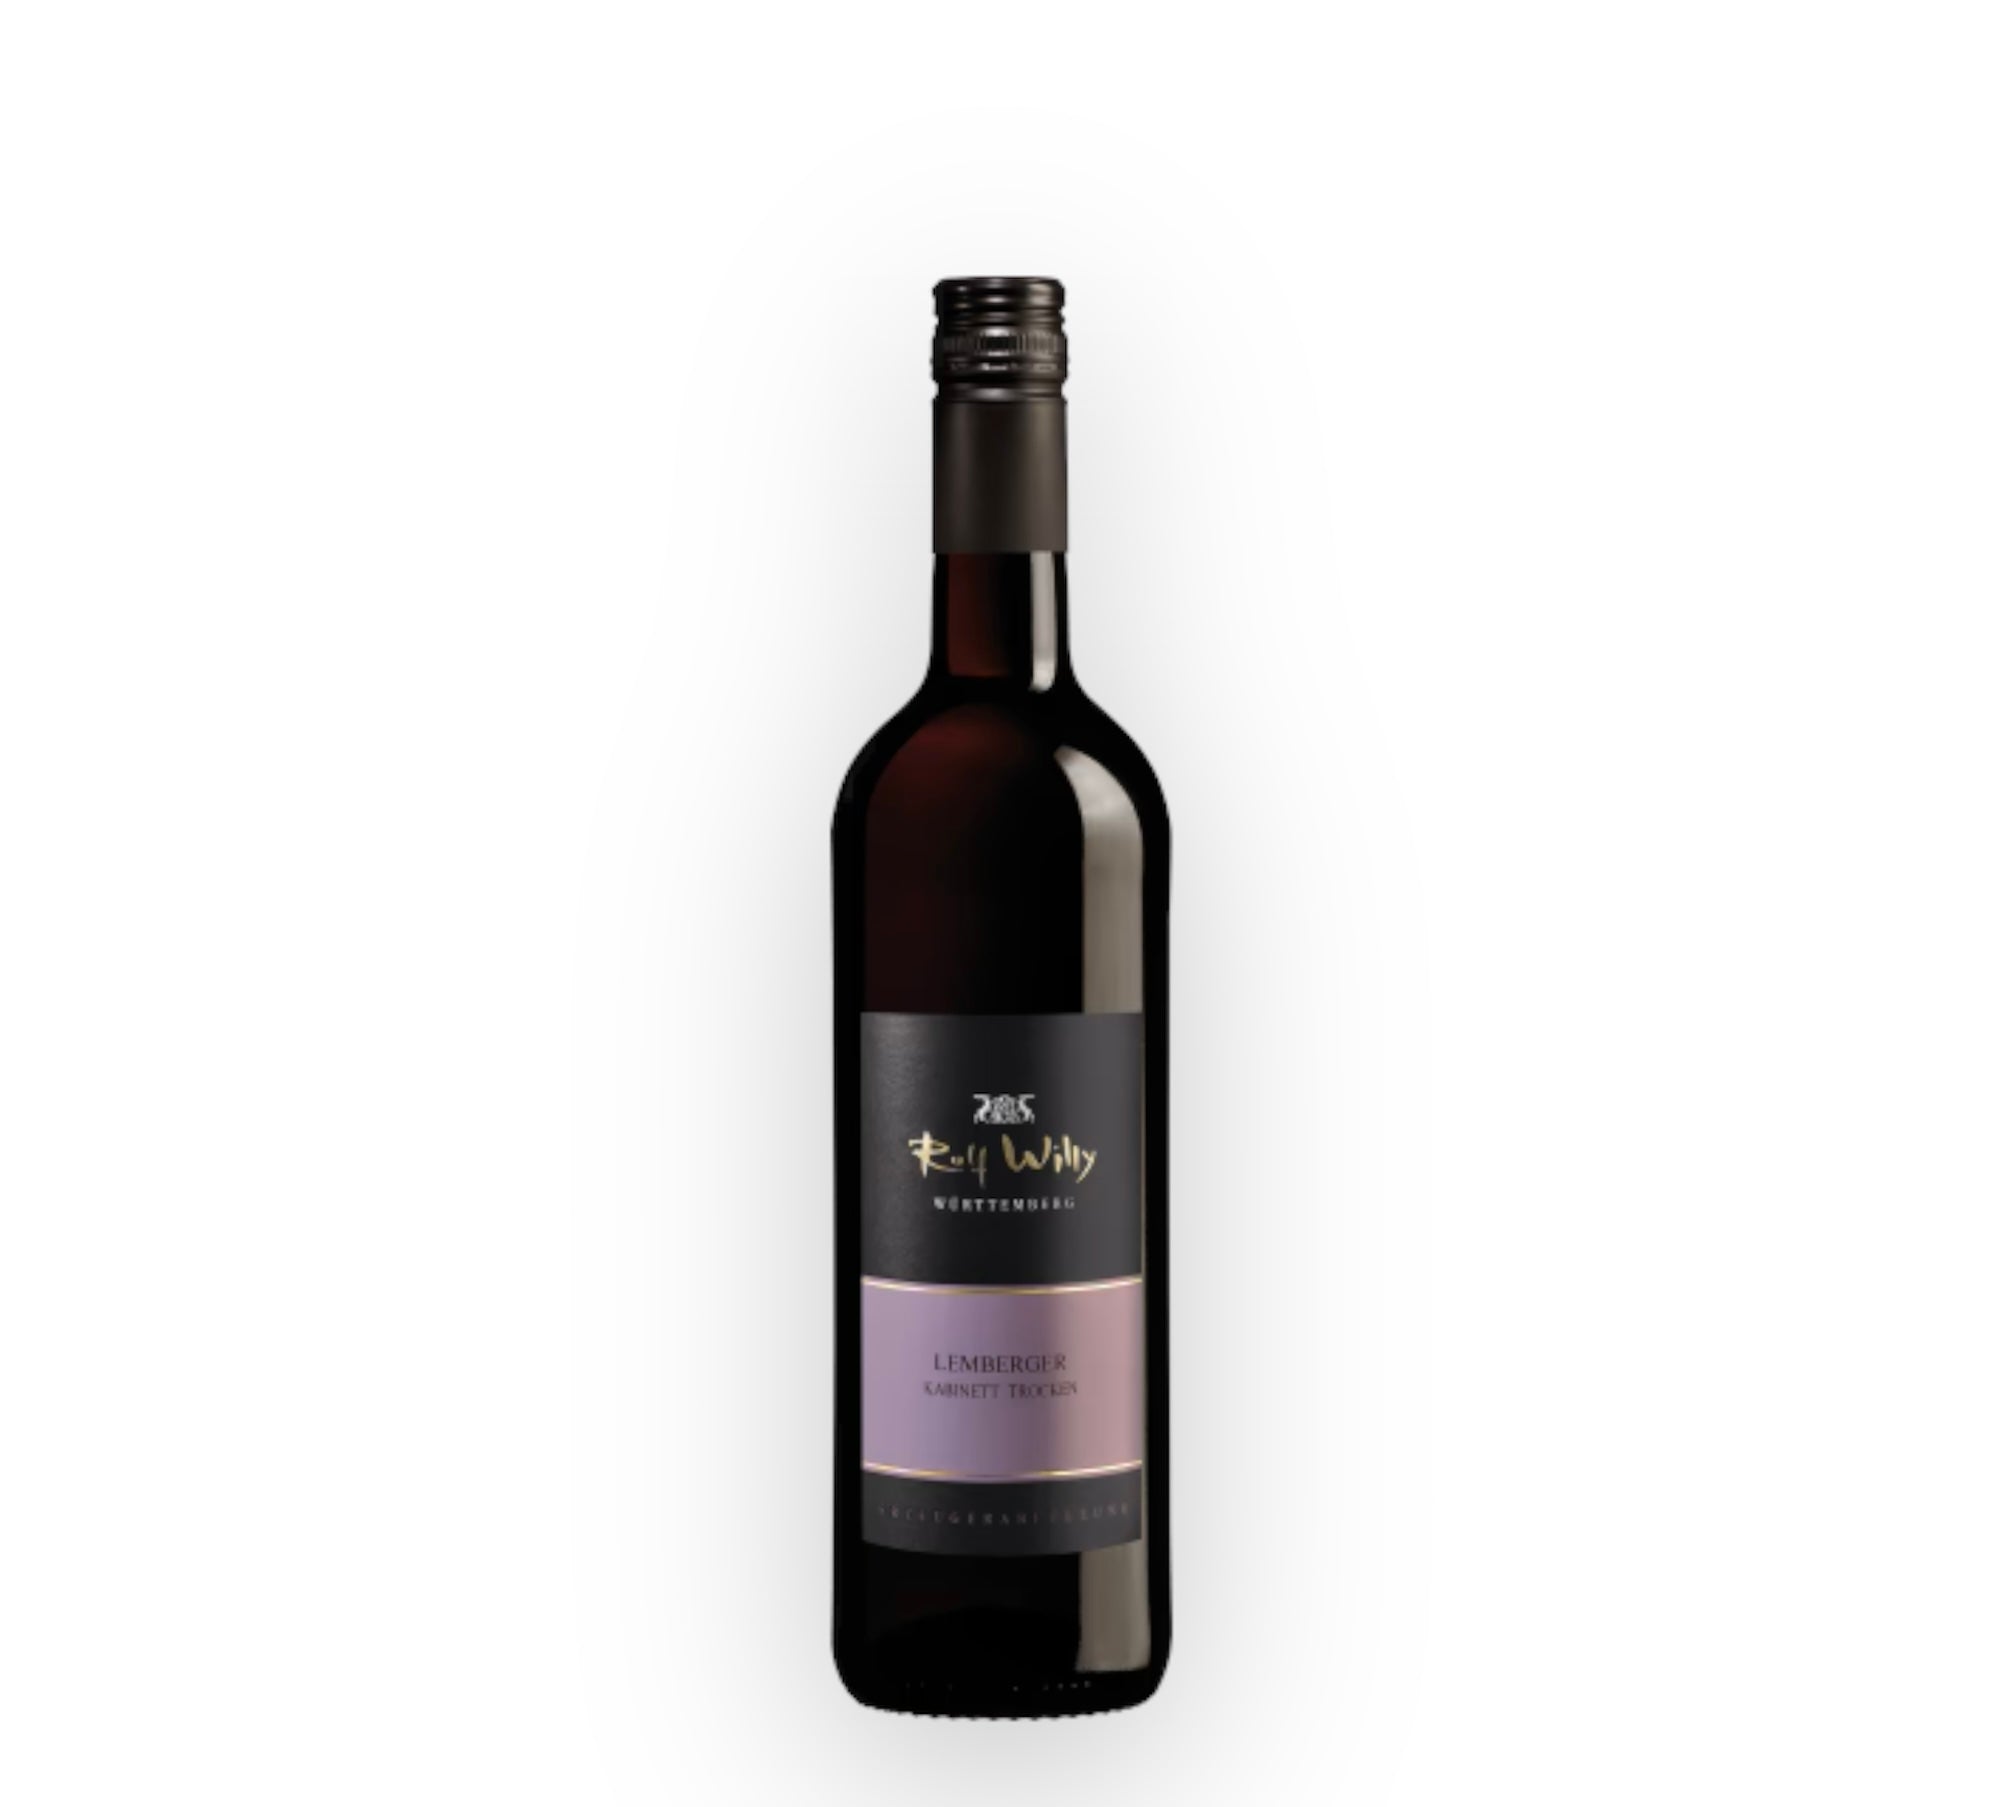 Rolf Willy Lemberger Kabinett Trocken 2019 red wine 0.75l